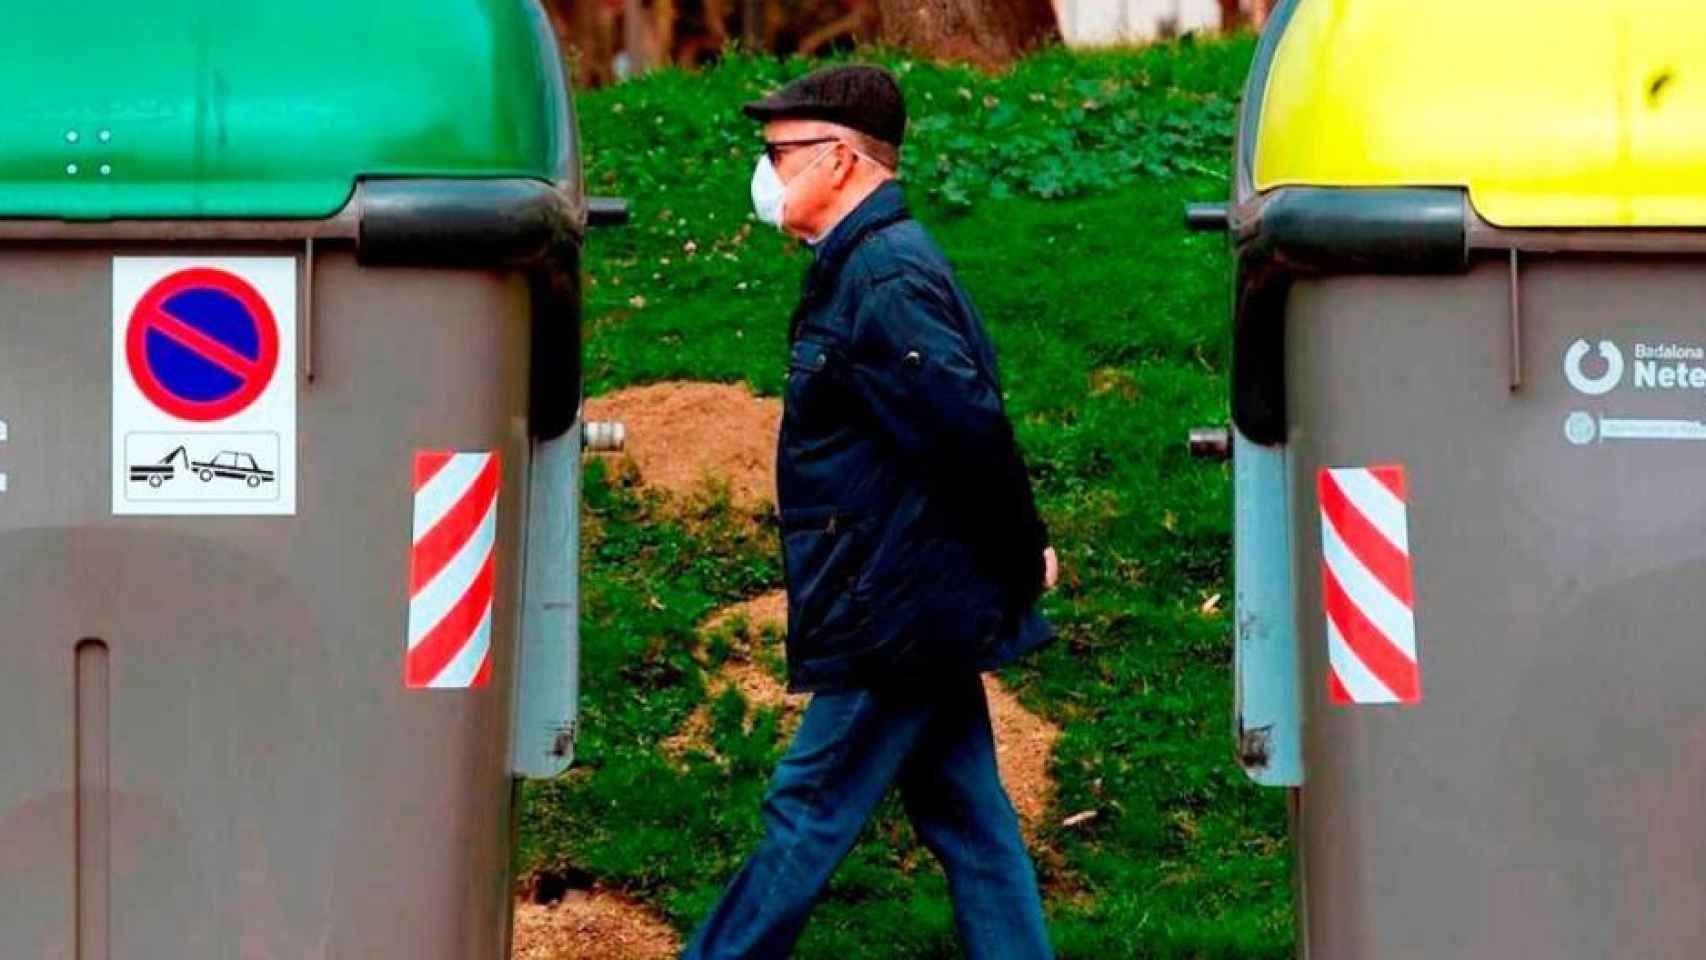 Un hombre camina entre dos contenedores de basura.